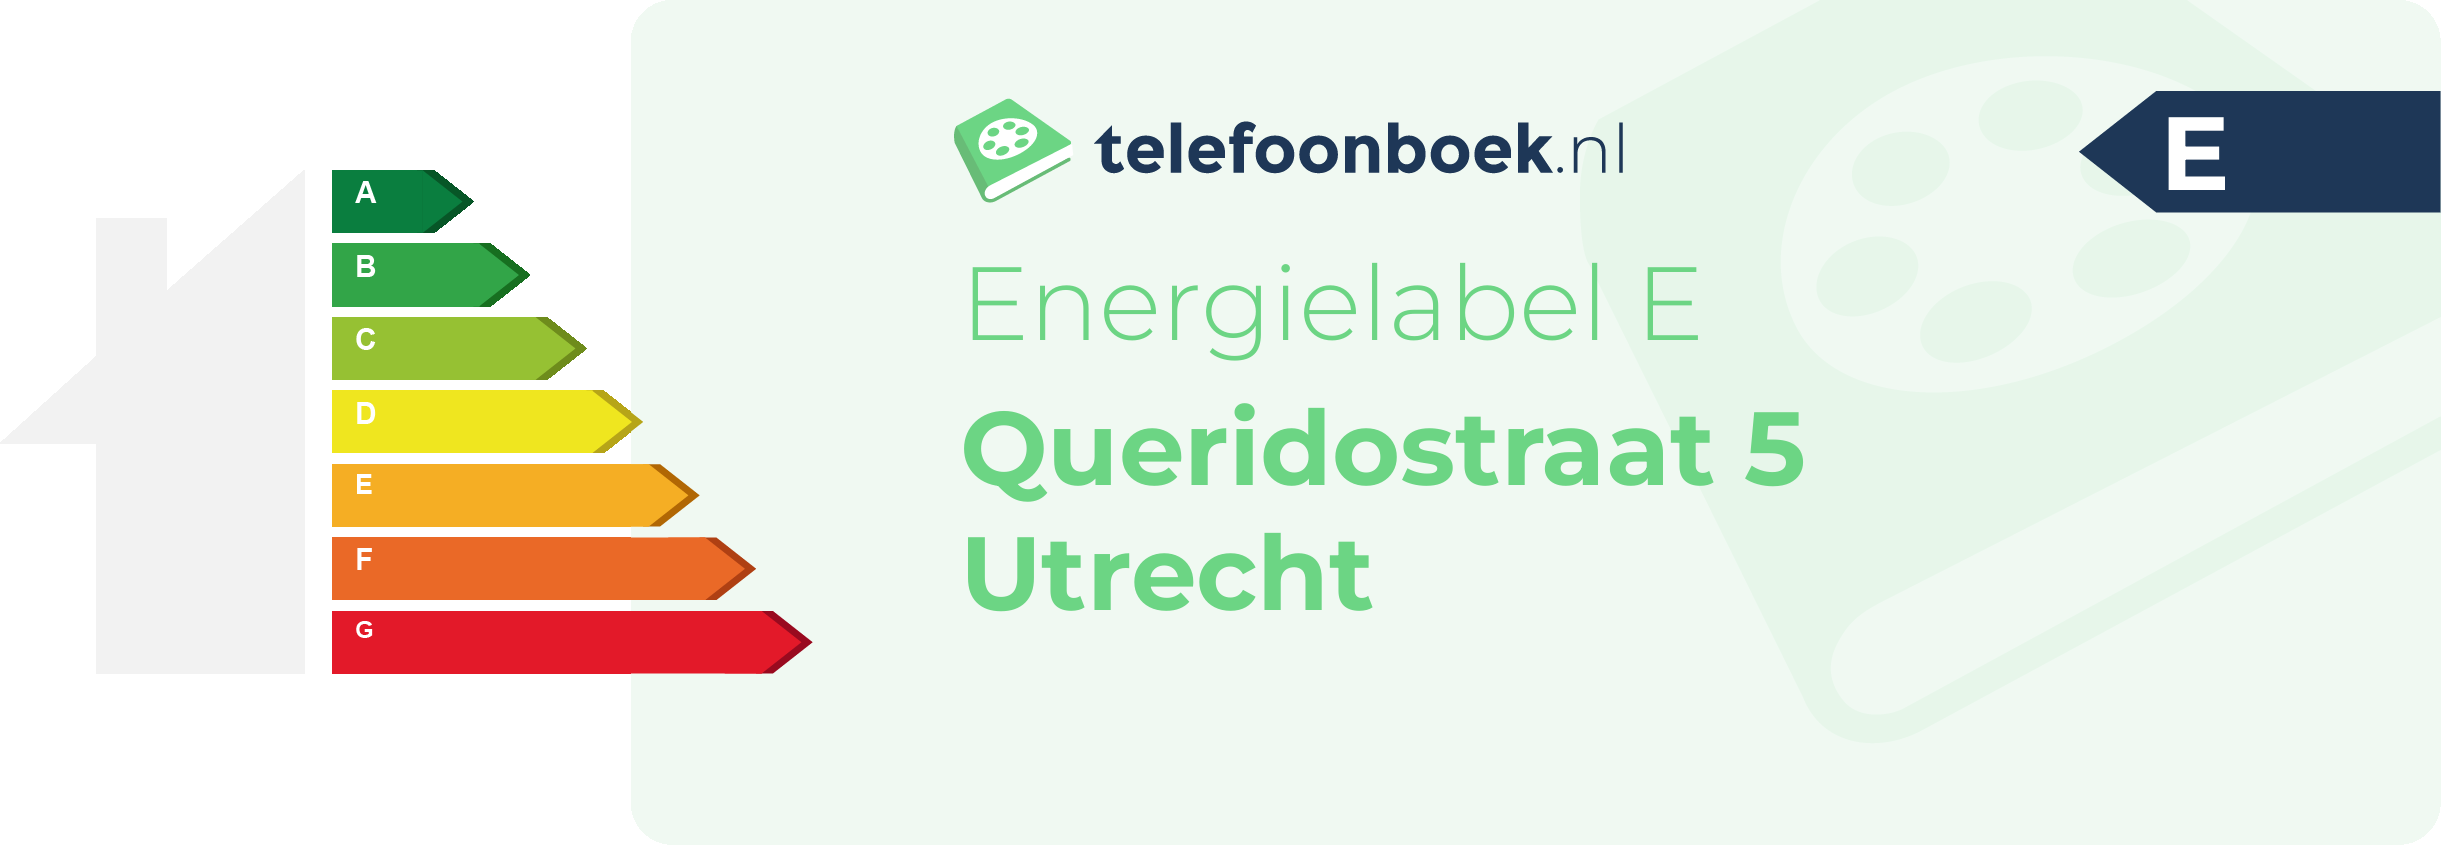 Energielabel Queridostraat 5 Utrecht